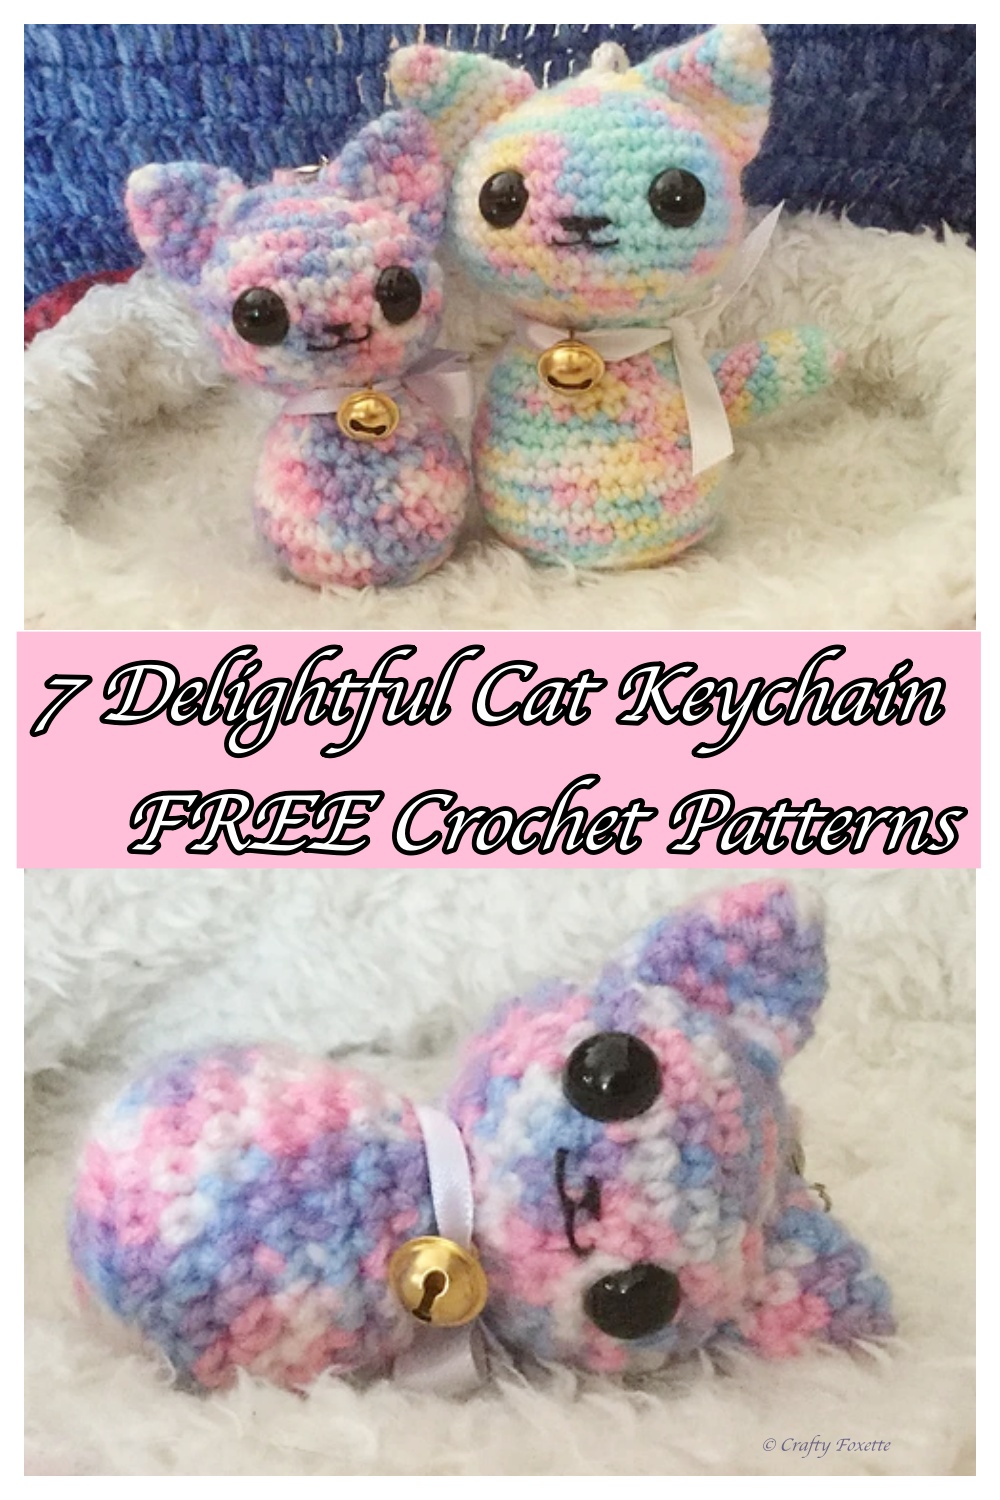 7 Delightful Cat Keychain Crochet Patterns – FREE